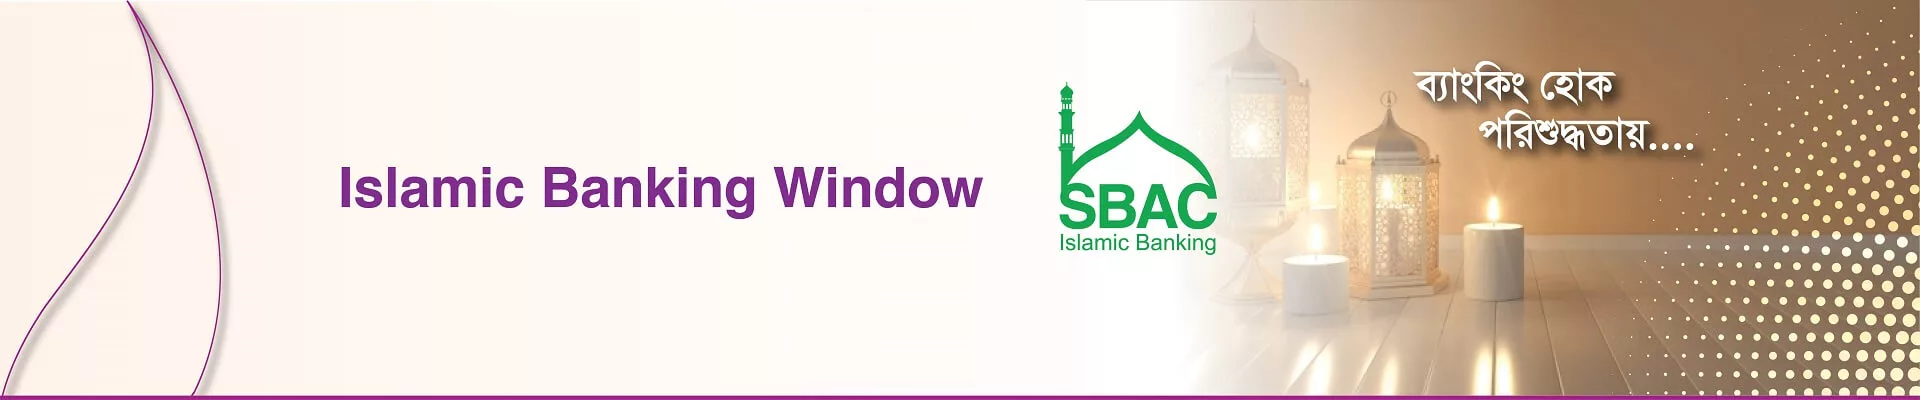 SBAC Islamic Banking Window